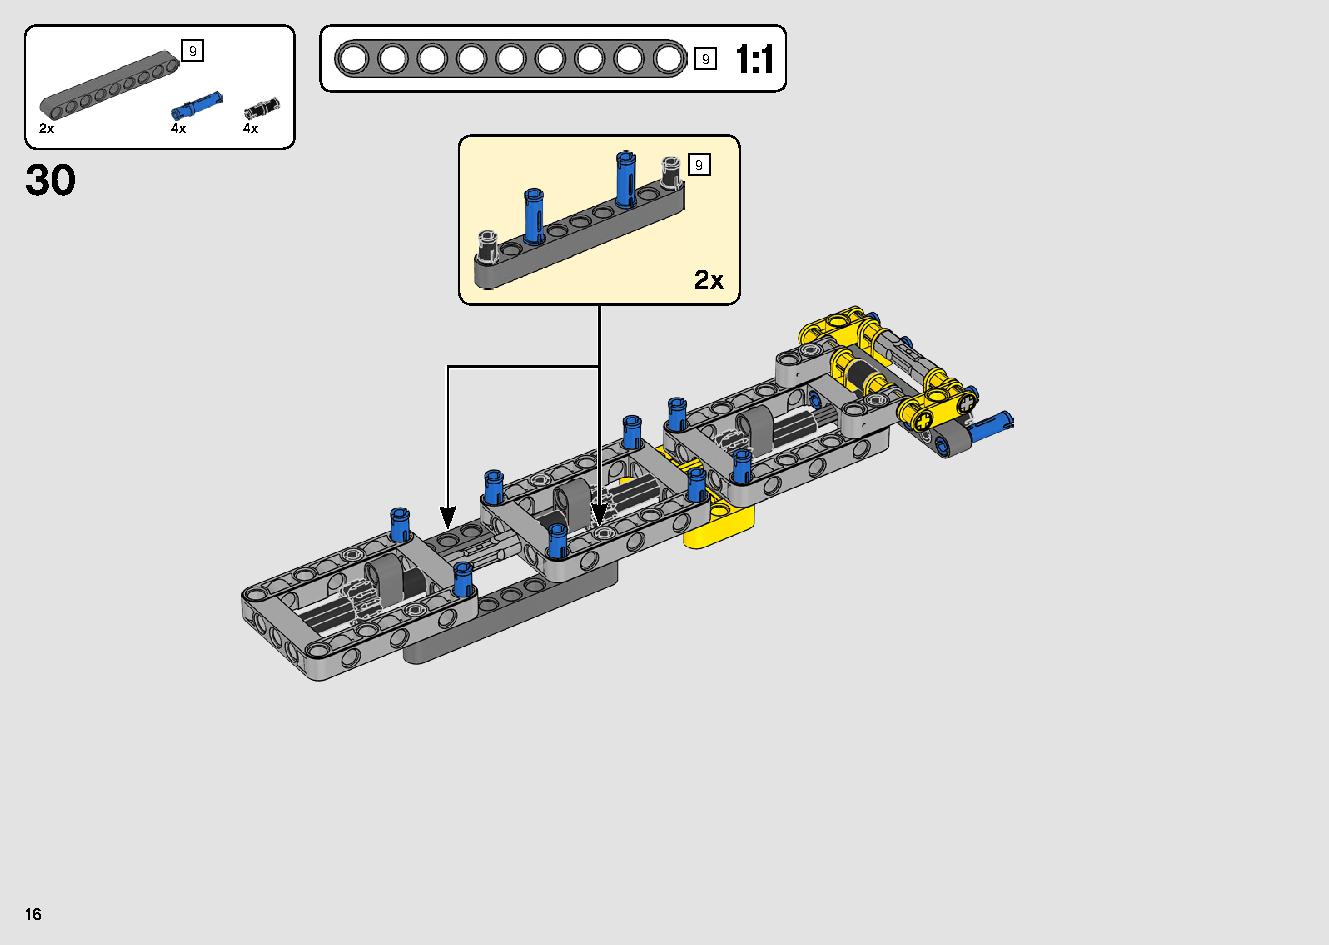 移動式クレーン車 42108 レゴの商品情報 レゴの説明書・組立方法 16 page